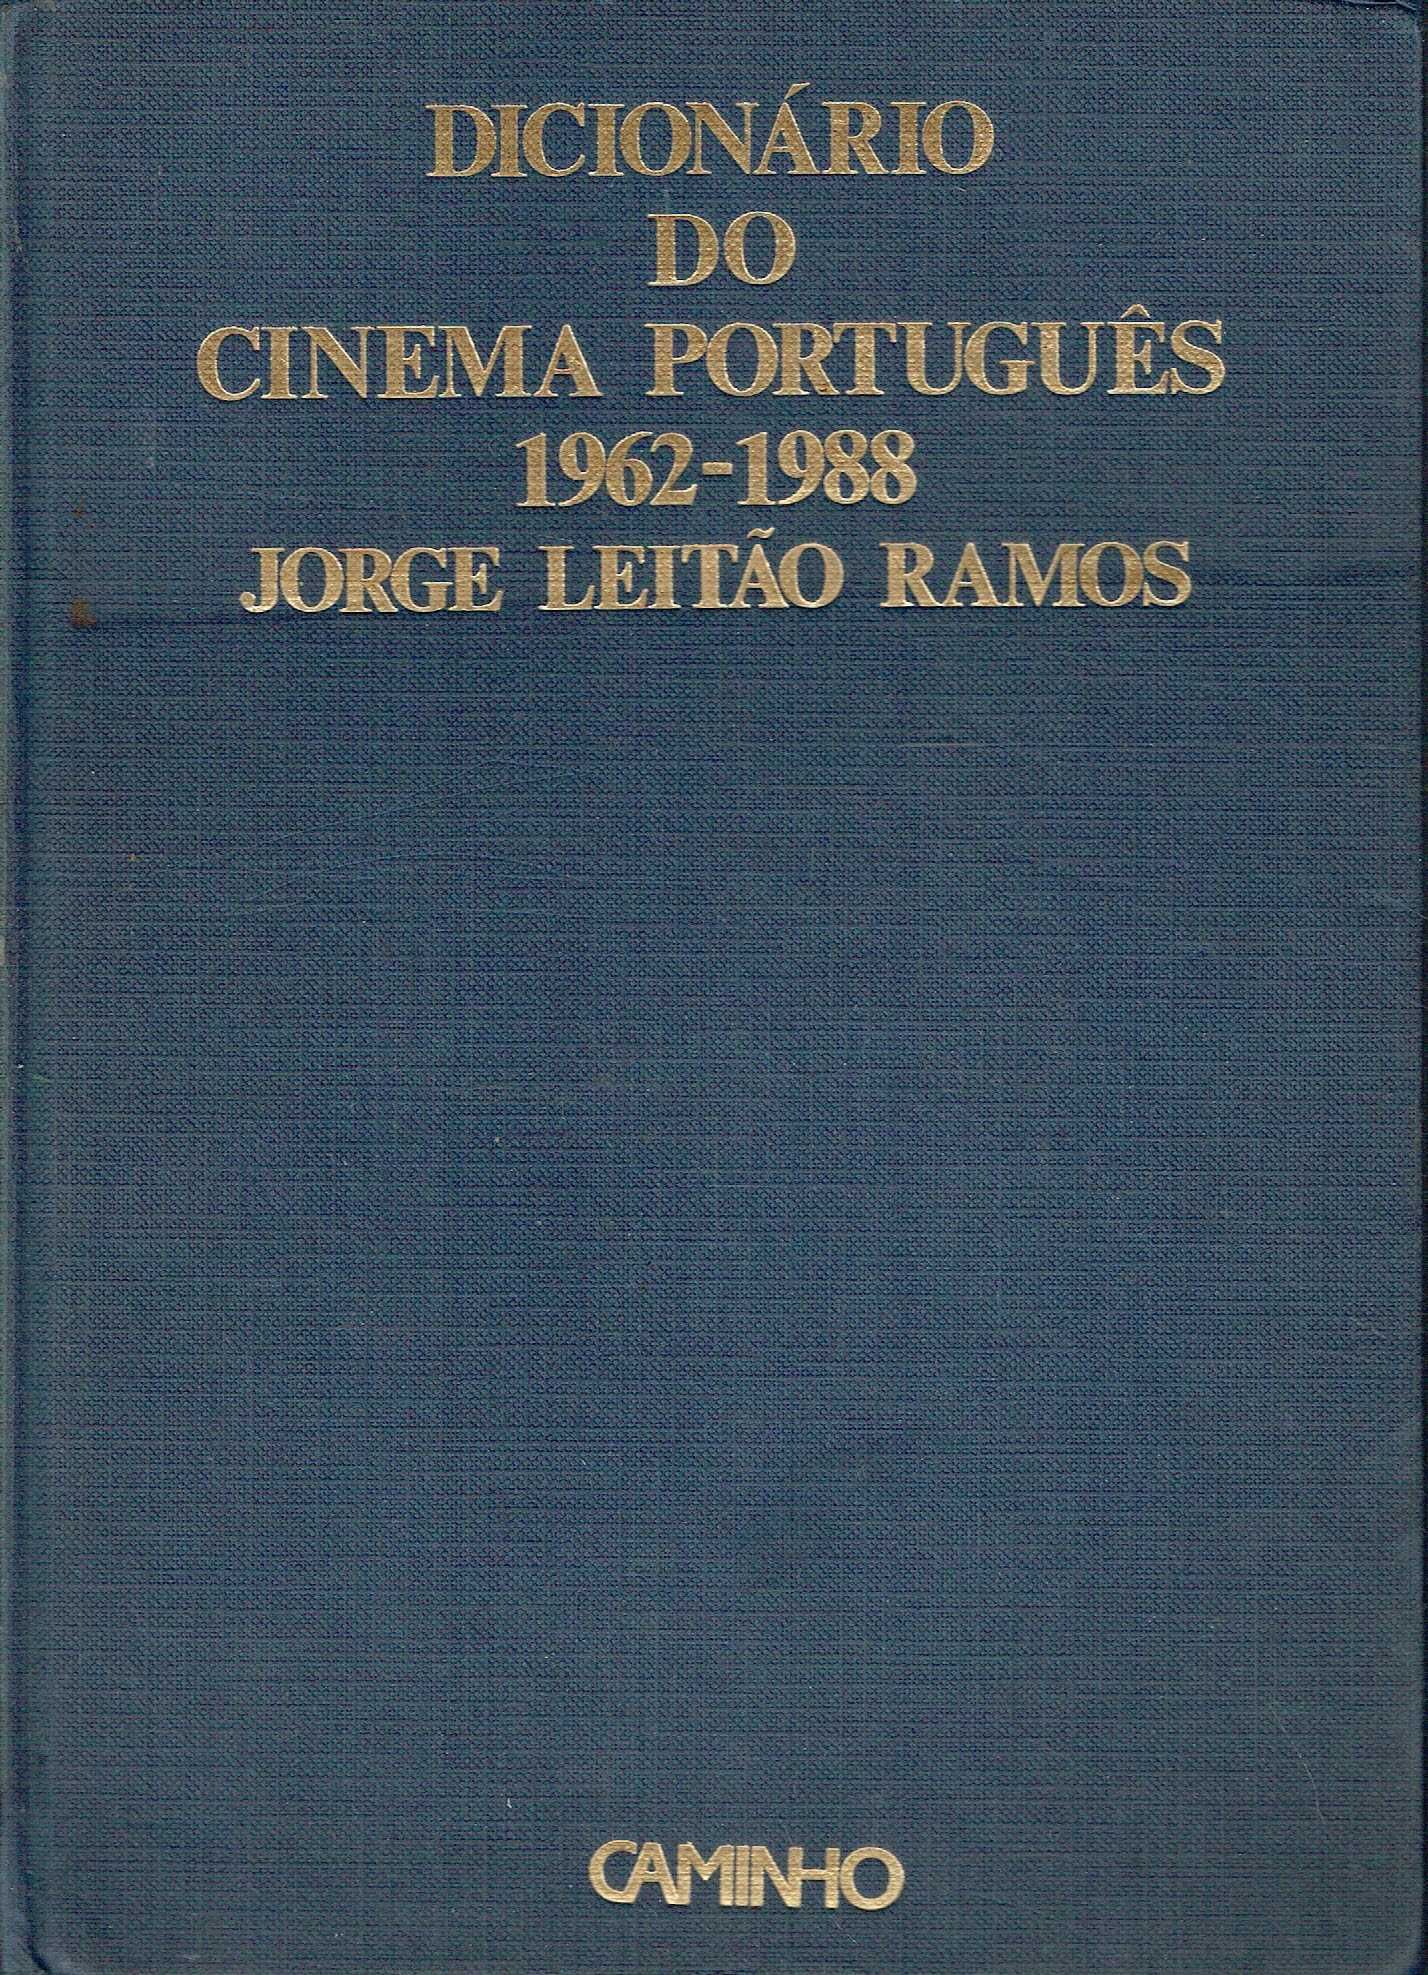 1033

Dicionário do Cinema Português 1962/1988
de Jorge Leitão Ramos